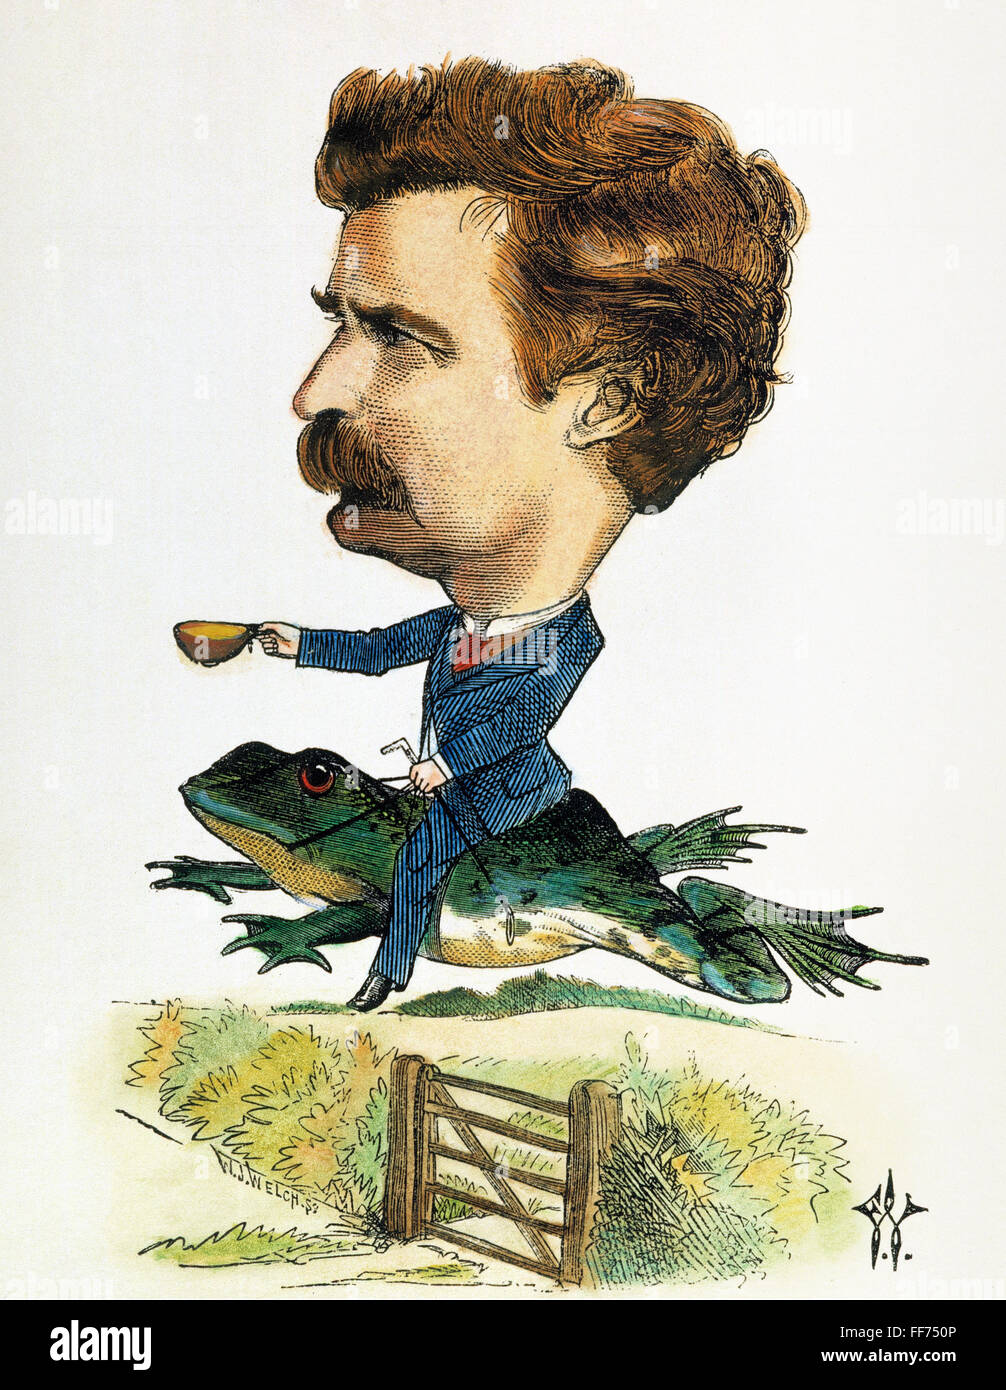 Destouches /n(1835-1910). Pseudonyme Mark Twain. L'écrivain et humoriste américain. Équitation le célèbre jumping frog. Caricature de couleur, 1872, par Frederick Waddy. Banque D'Images